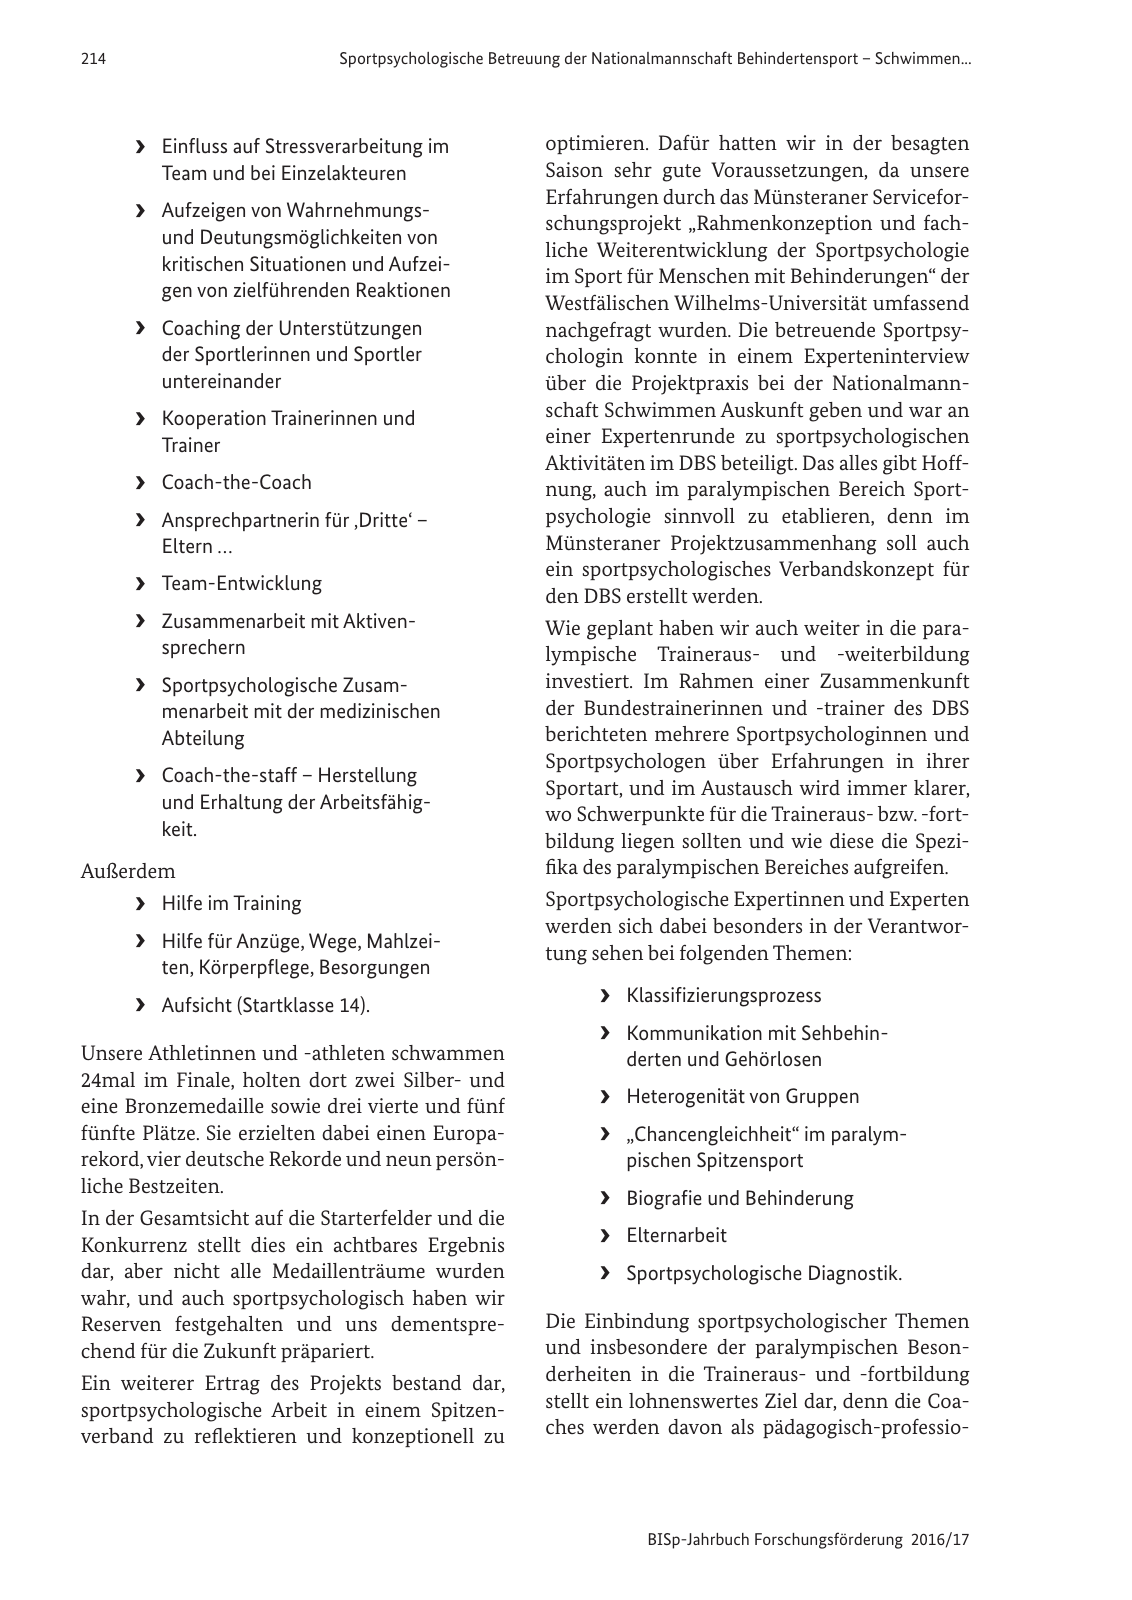 Vorschau BISp-Jahrbuch 2016/2017 Seite 216